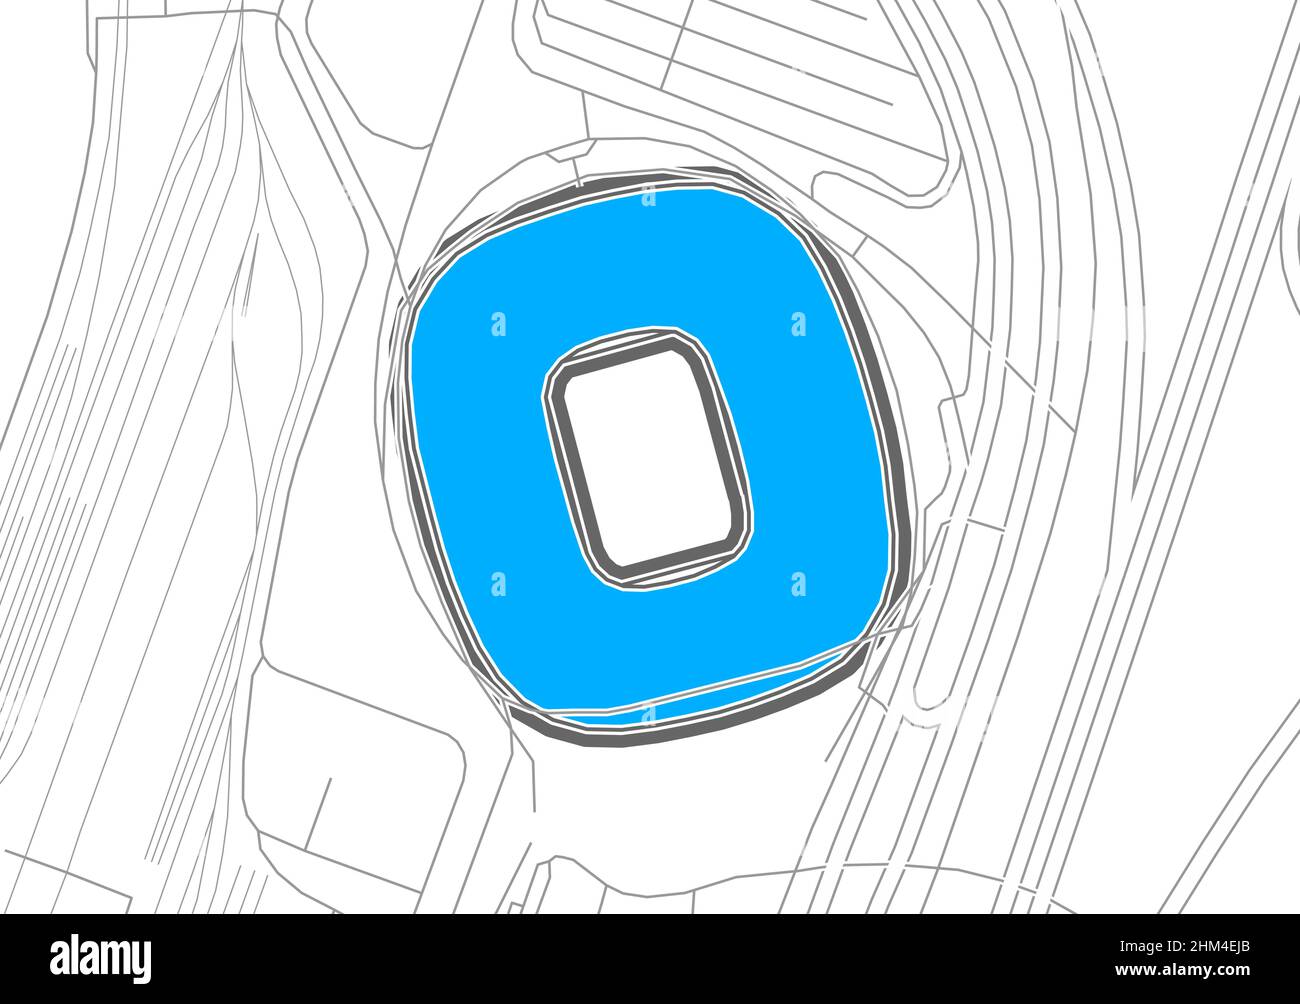 Munich, stade de football, carte vectorielle.La carte bundesliga statium a été tracée avec des zones blanches et des lignes pour les routes principales, les routes latérales. Illustration de Vecteur